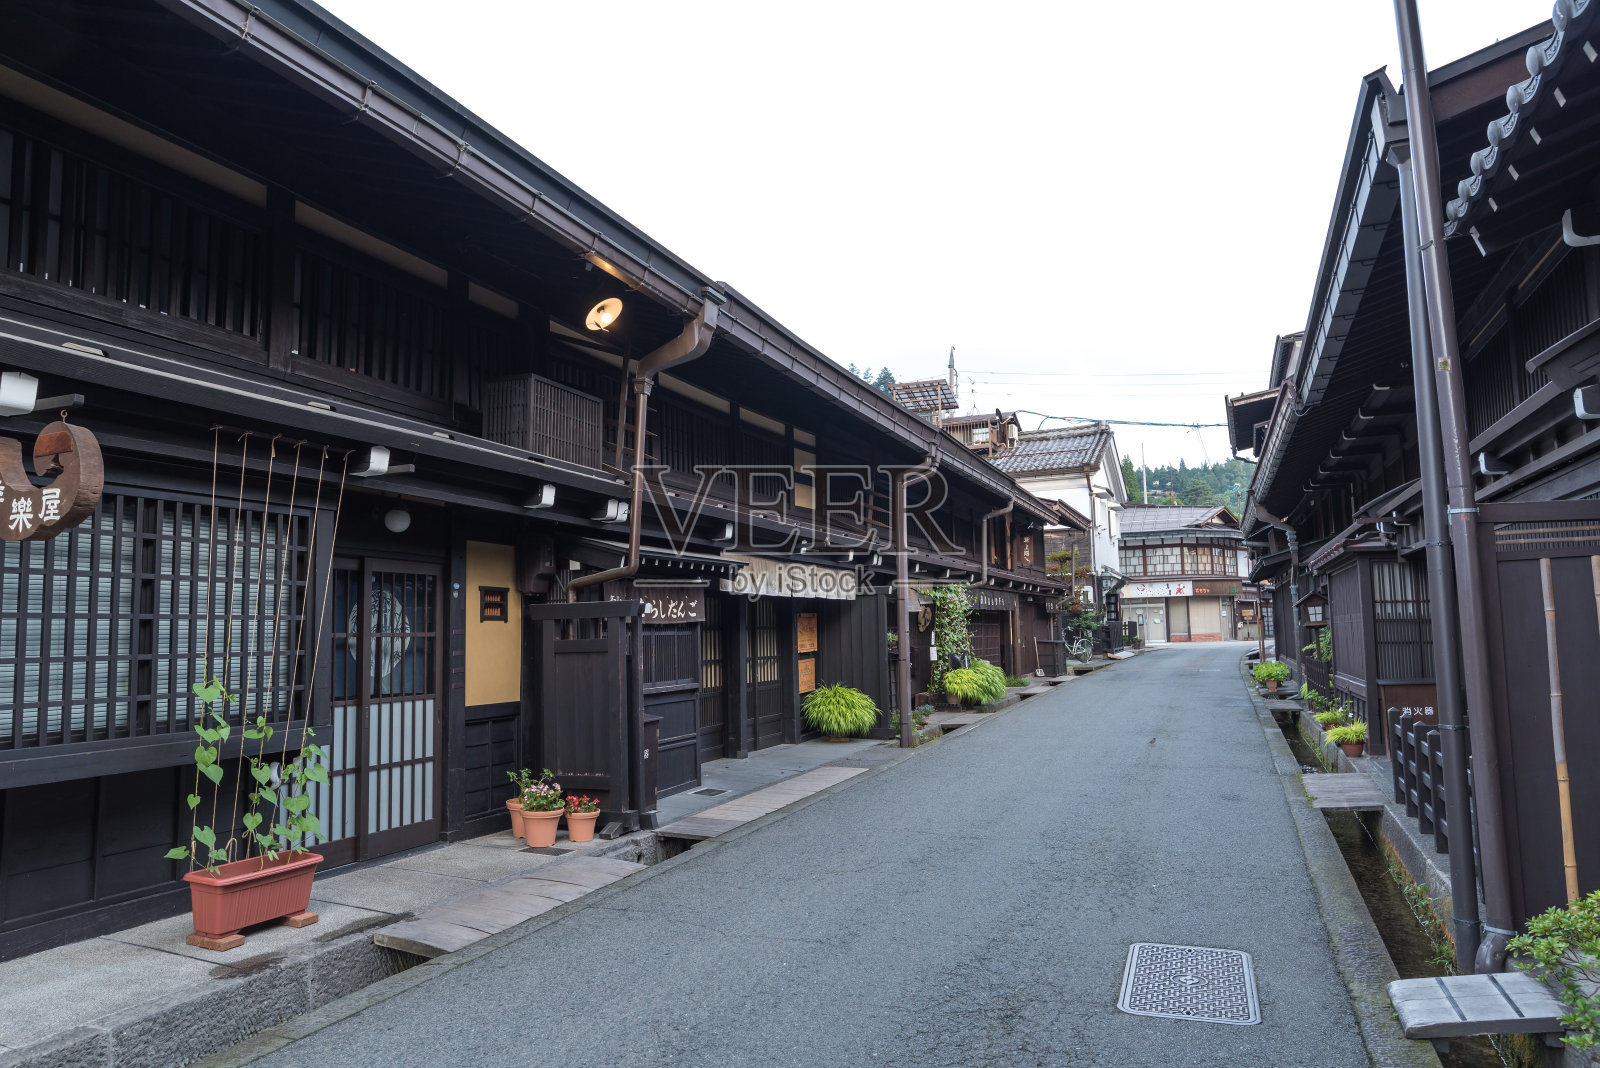 日本高山古镇的老房子照片摄影图片